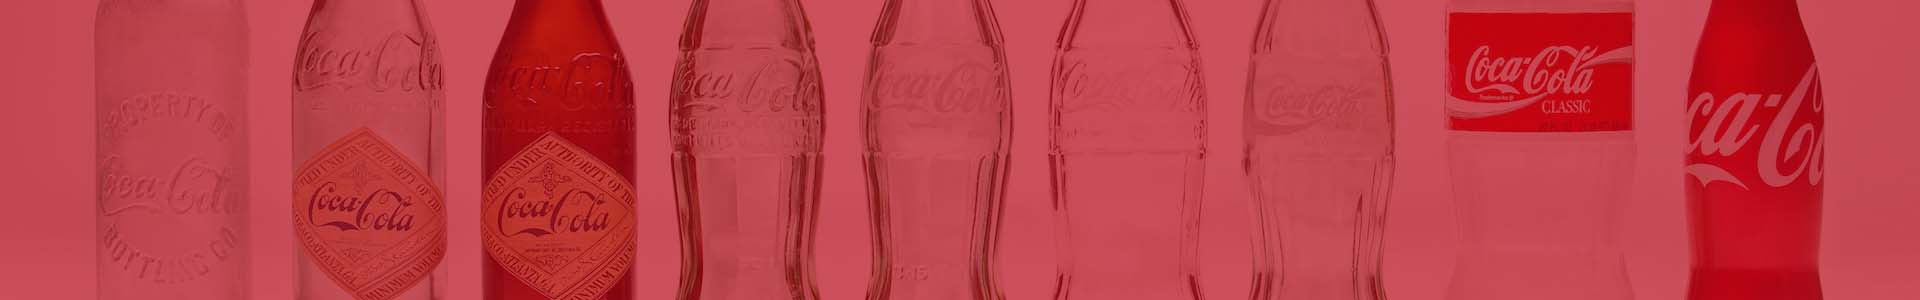 Análisis del ciclo de vida de envases de Coca-Cola